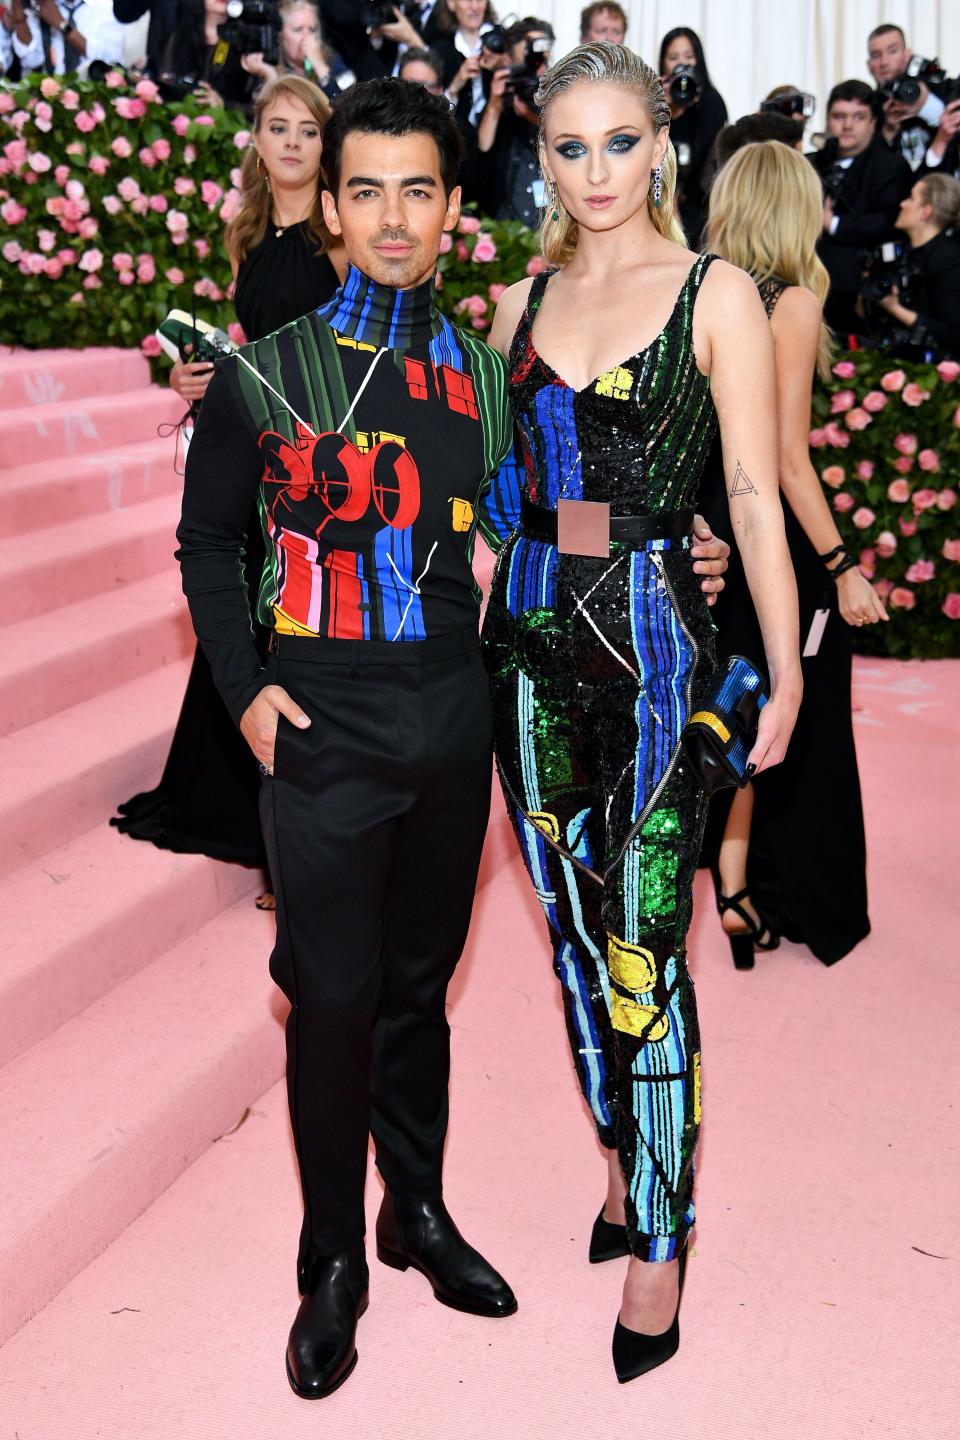 Joe Jonas and Sophie Turner attend the 2019 Met Gala.